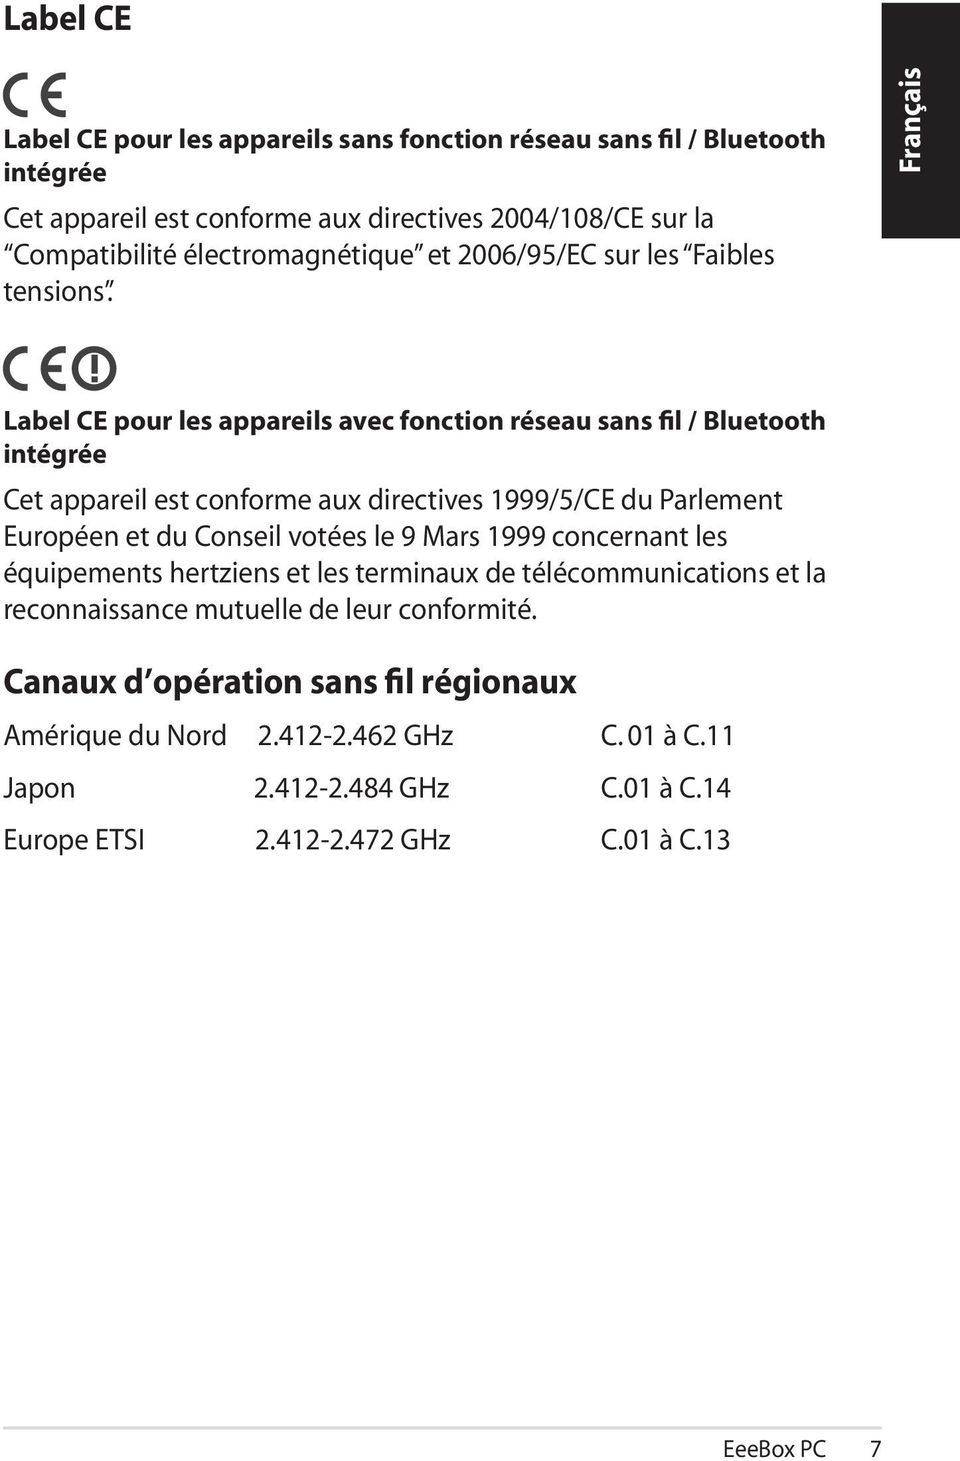 Label CE pour les appareils avec fonction réseau sans fil / Bluetooth intégrée Cet appareil est conforme aux directives 1999/5/CE du Parlement Européen et du Conseil votées le